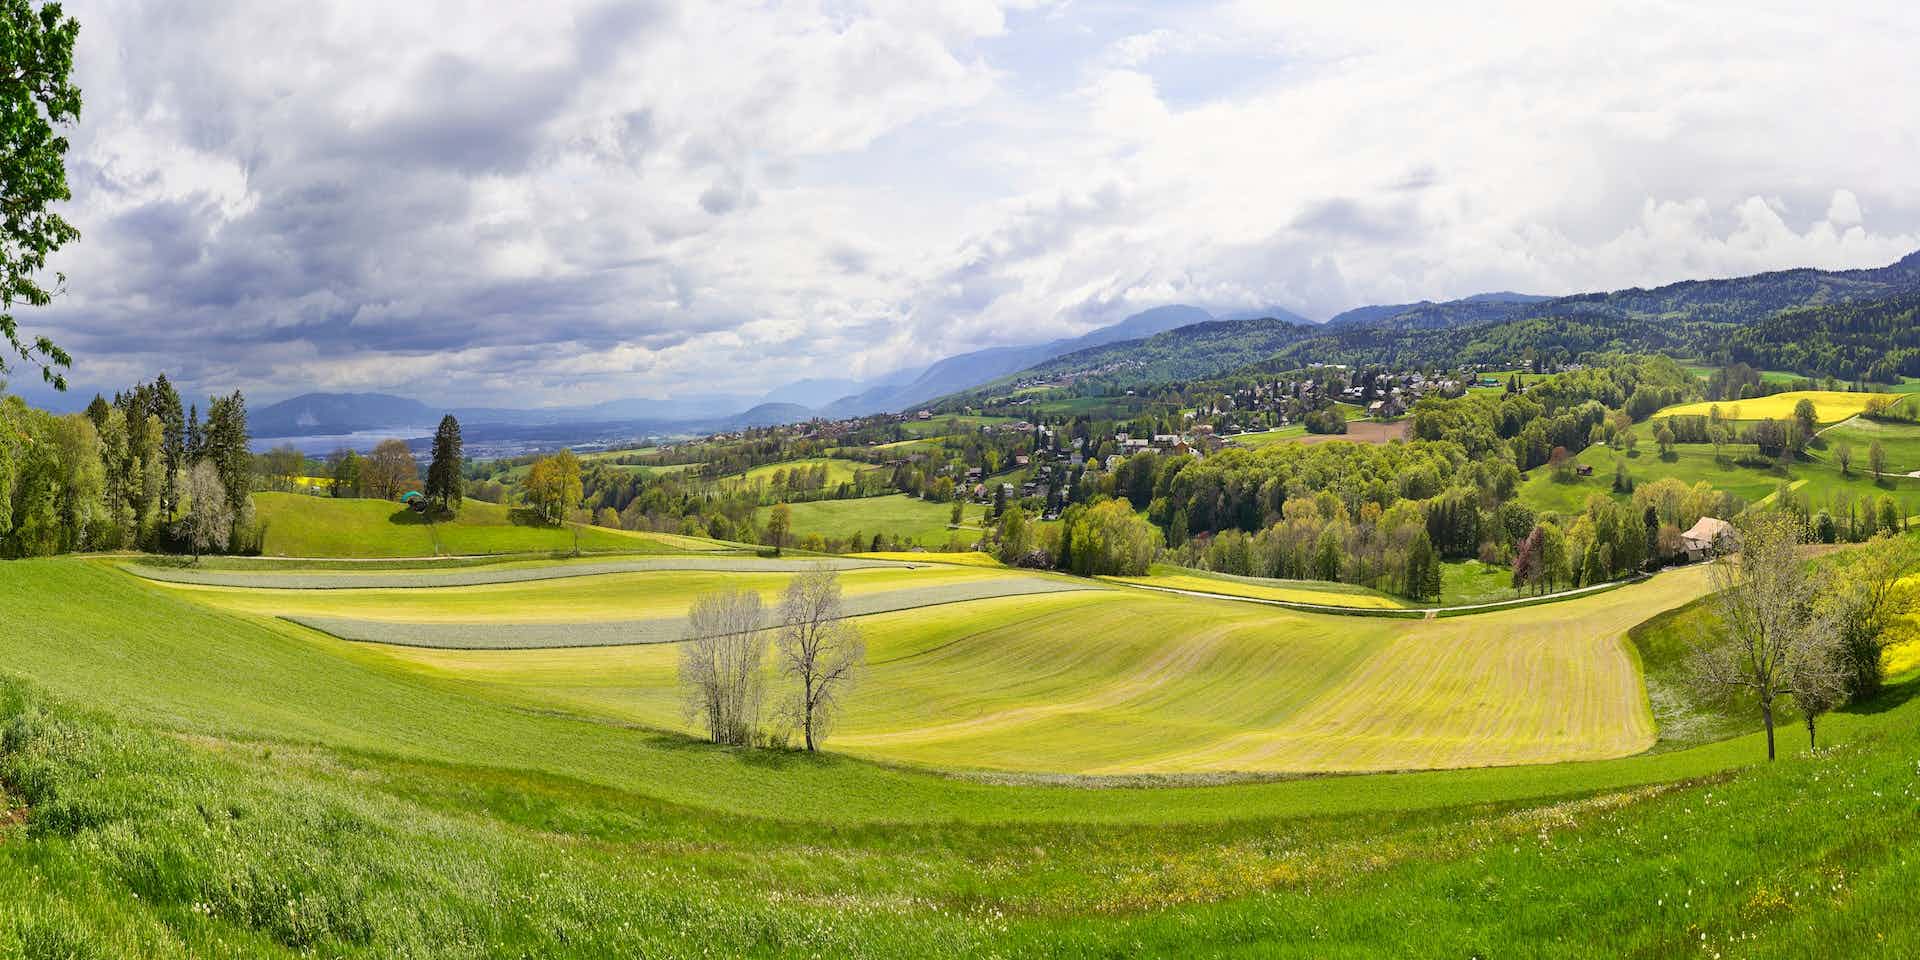 La Ferme Yverdon, producteur à Yverdon-les-Bains canton de Vaud en Suisse